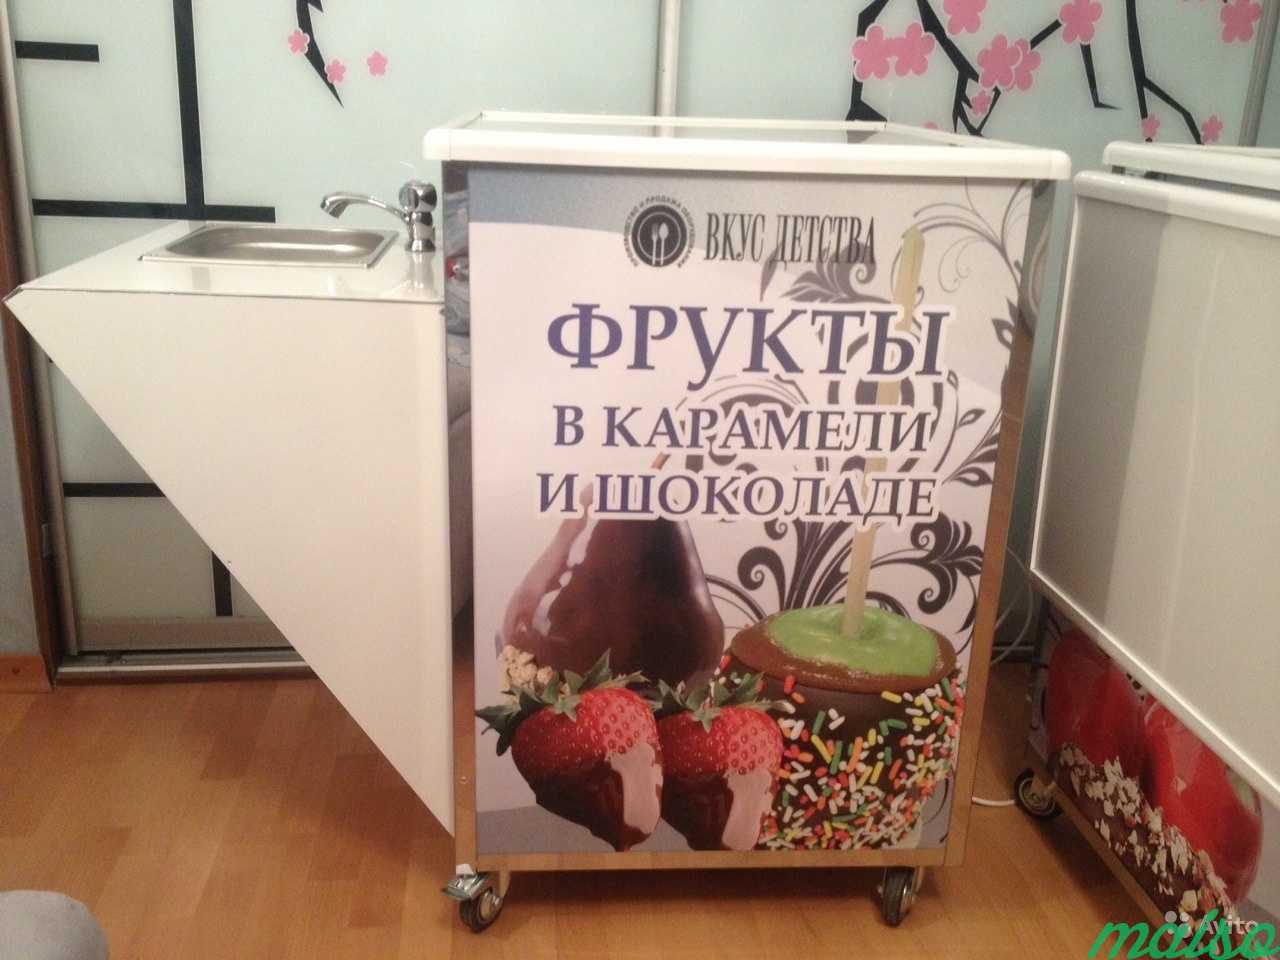 Оборудование для яблок в карамели и фруктов в шоко в Москве. Фото 2